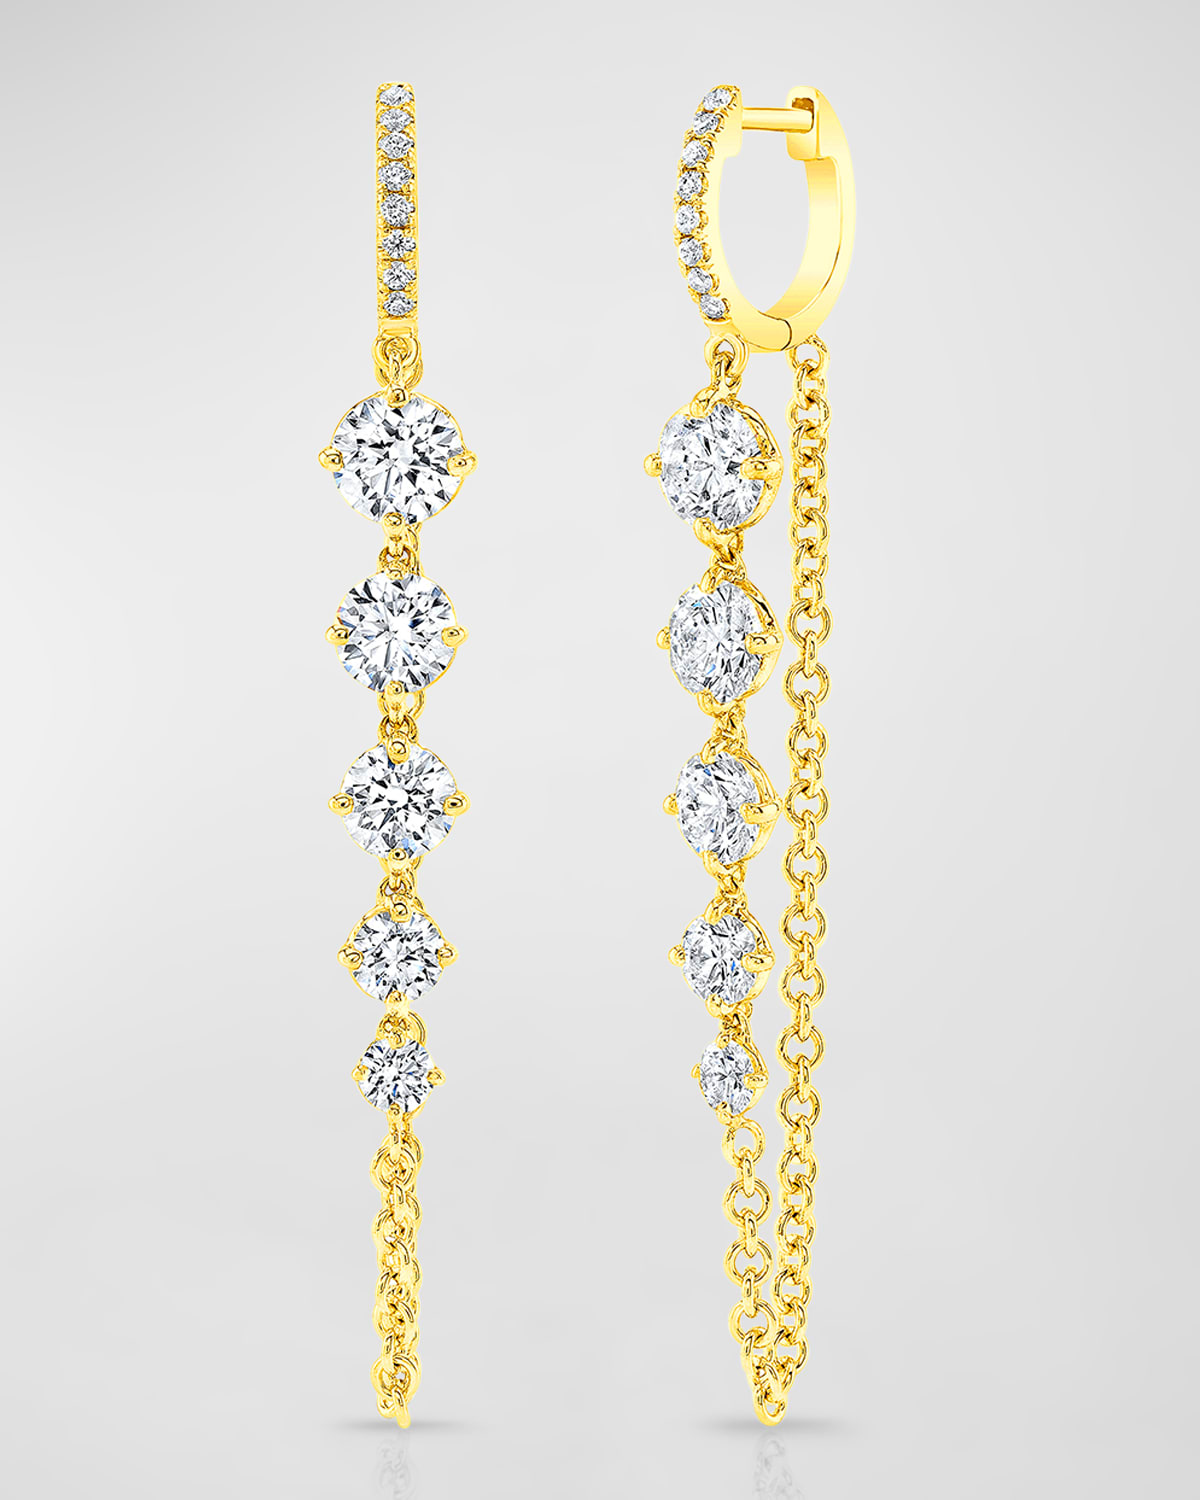 Rahaminov Diamonds 18k Yellow Gold Round Diamond Chain And Huggie Earrings